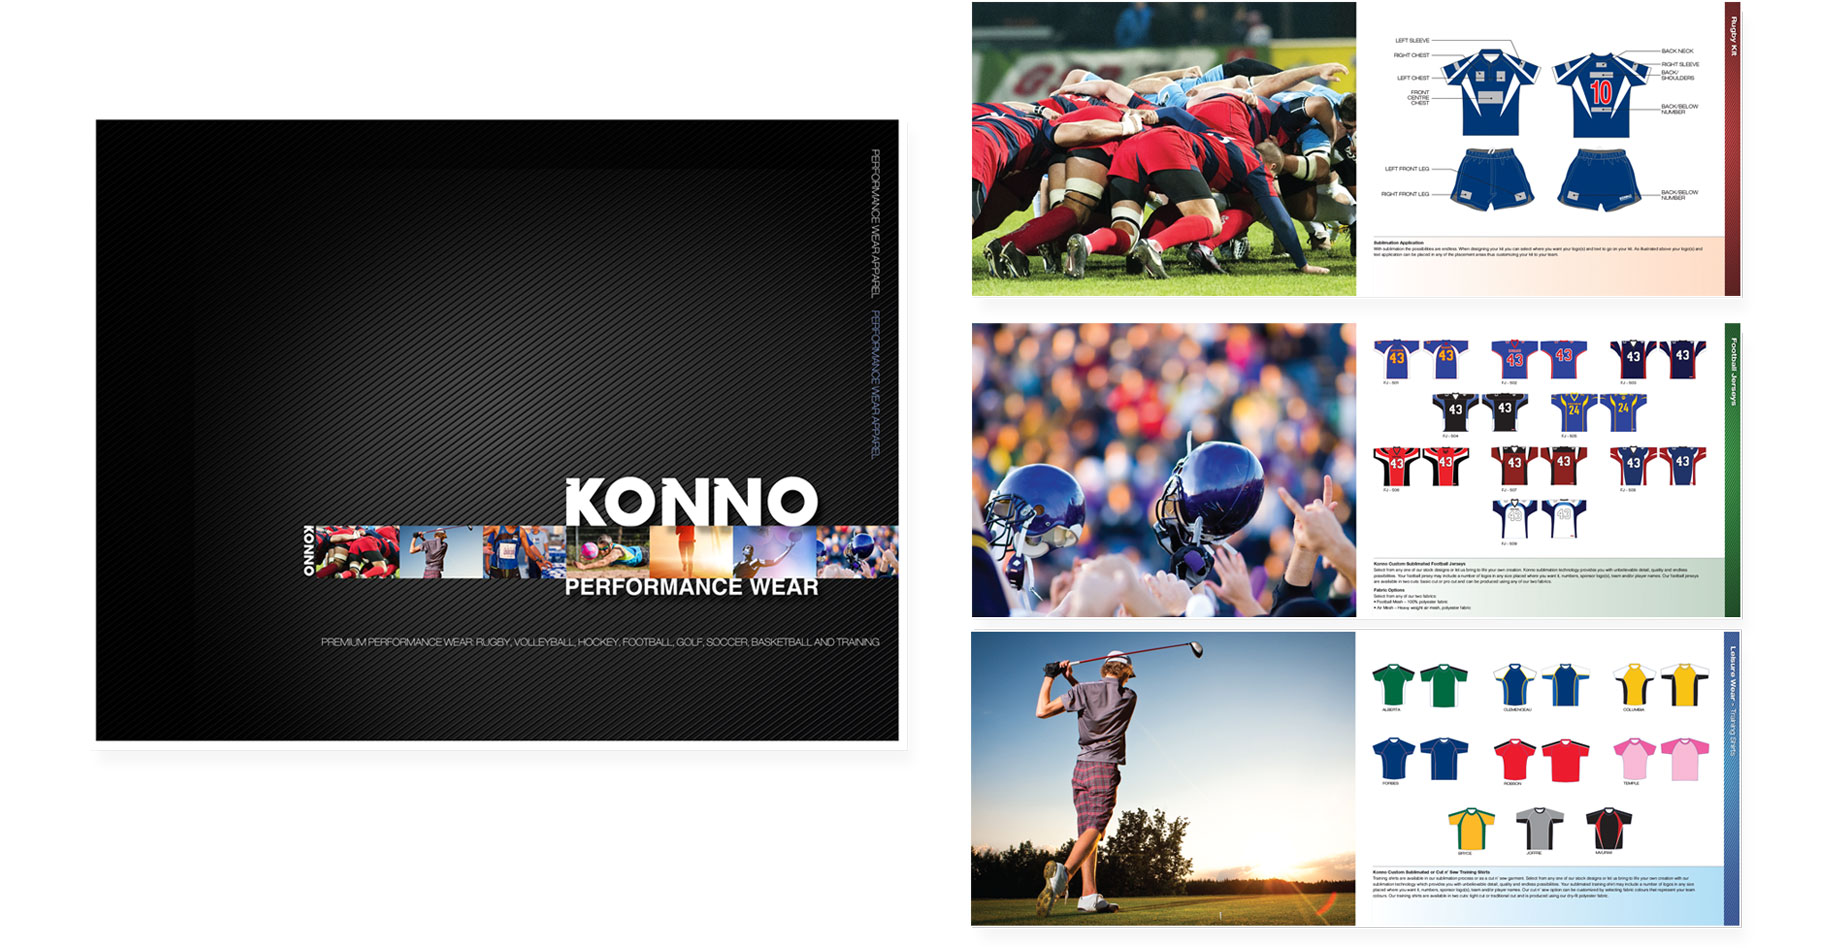 Konno Work Protfolio Slide